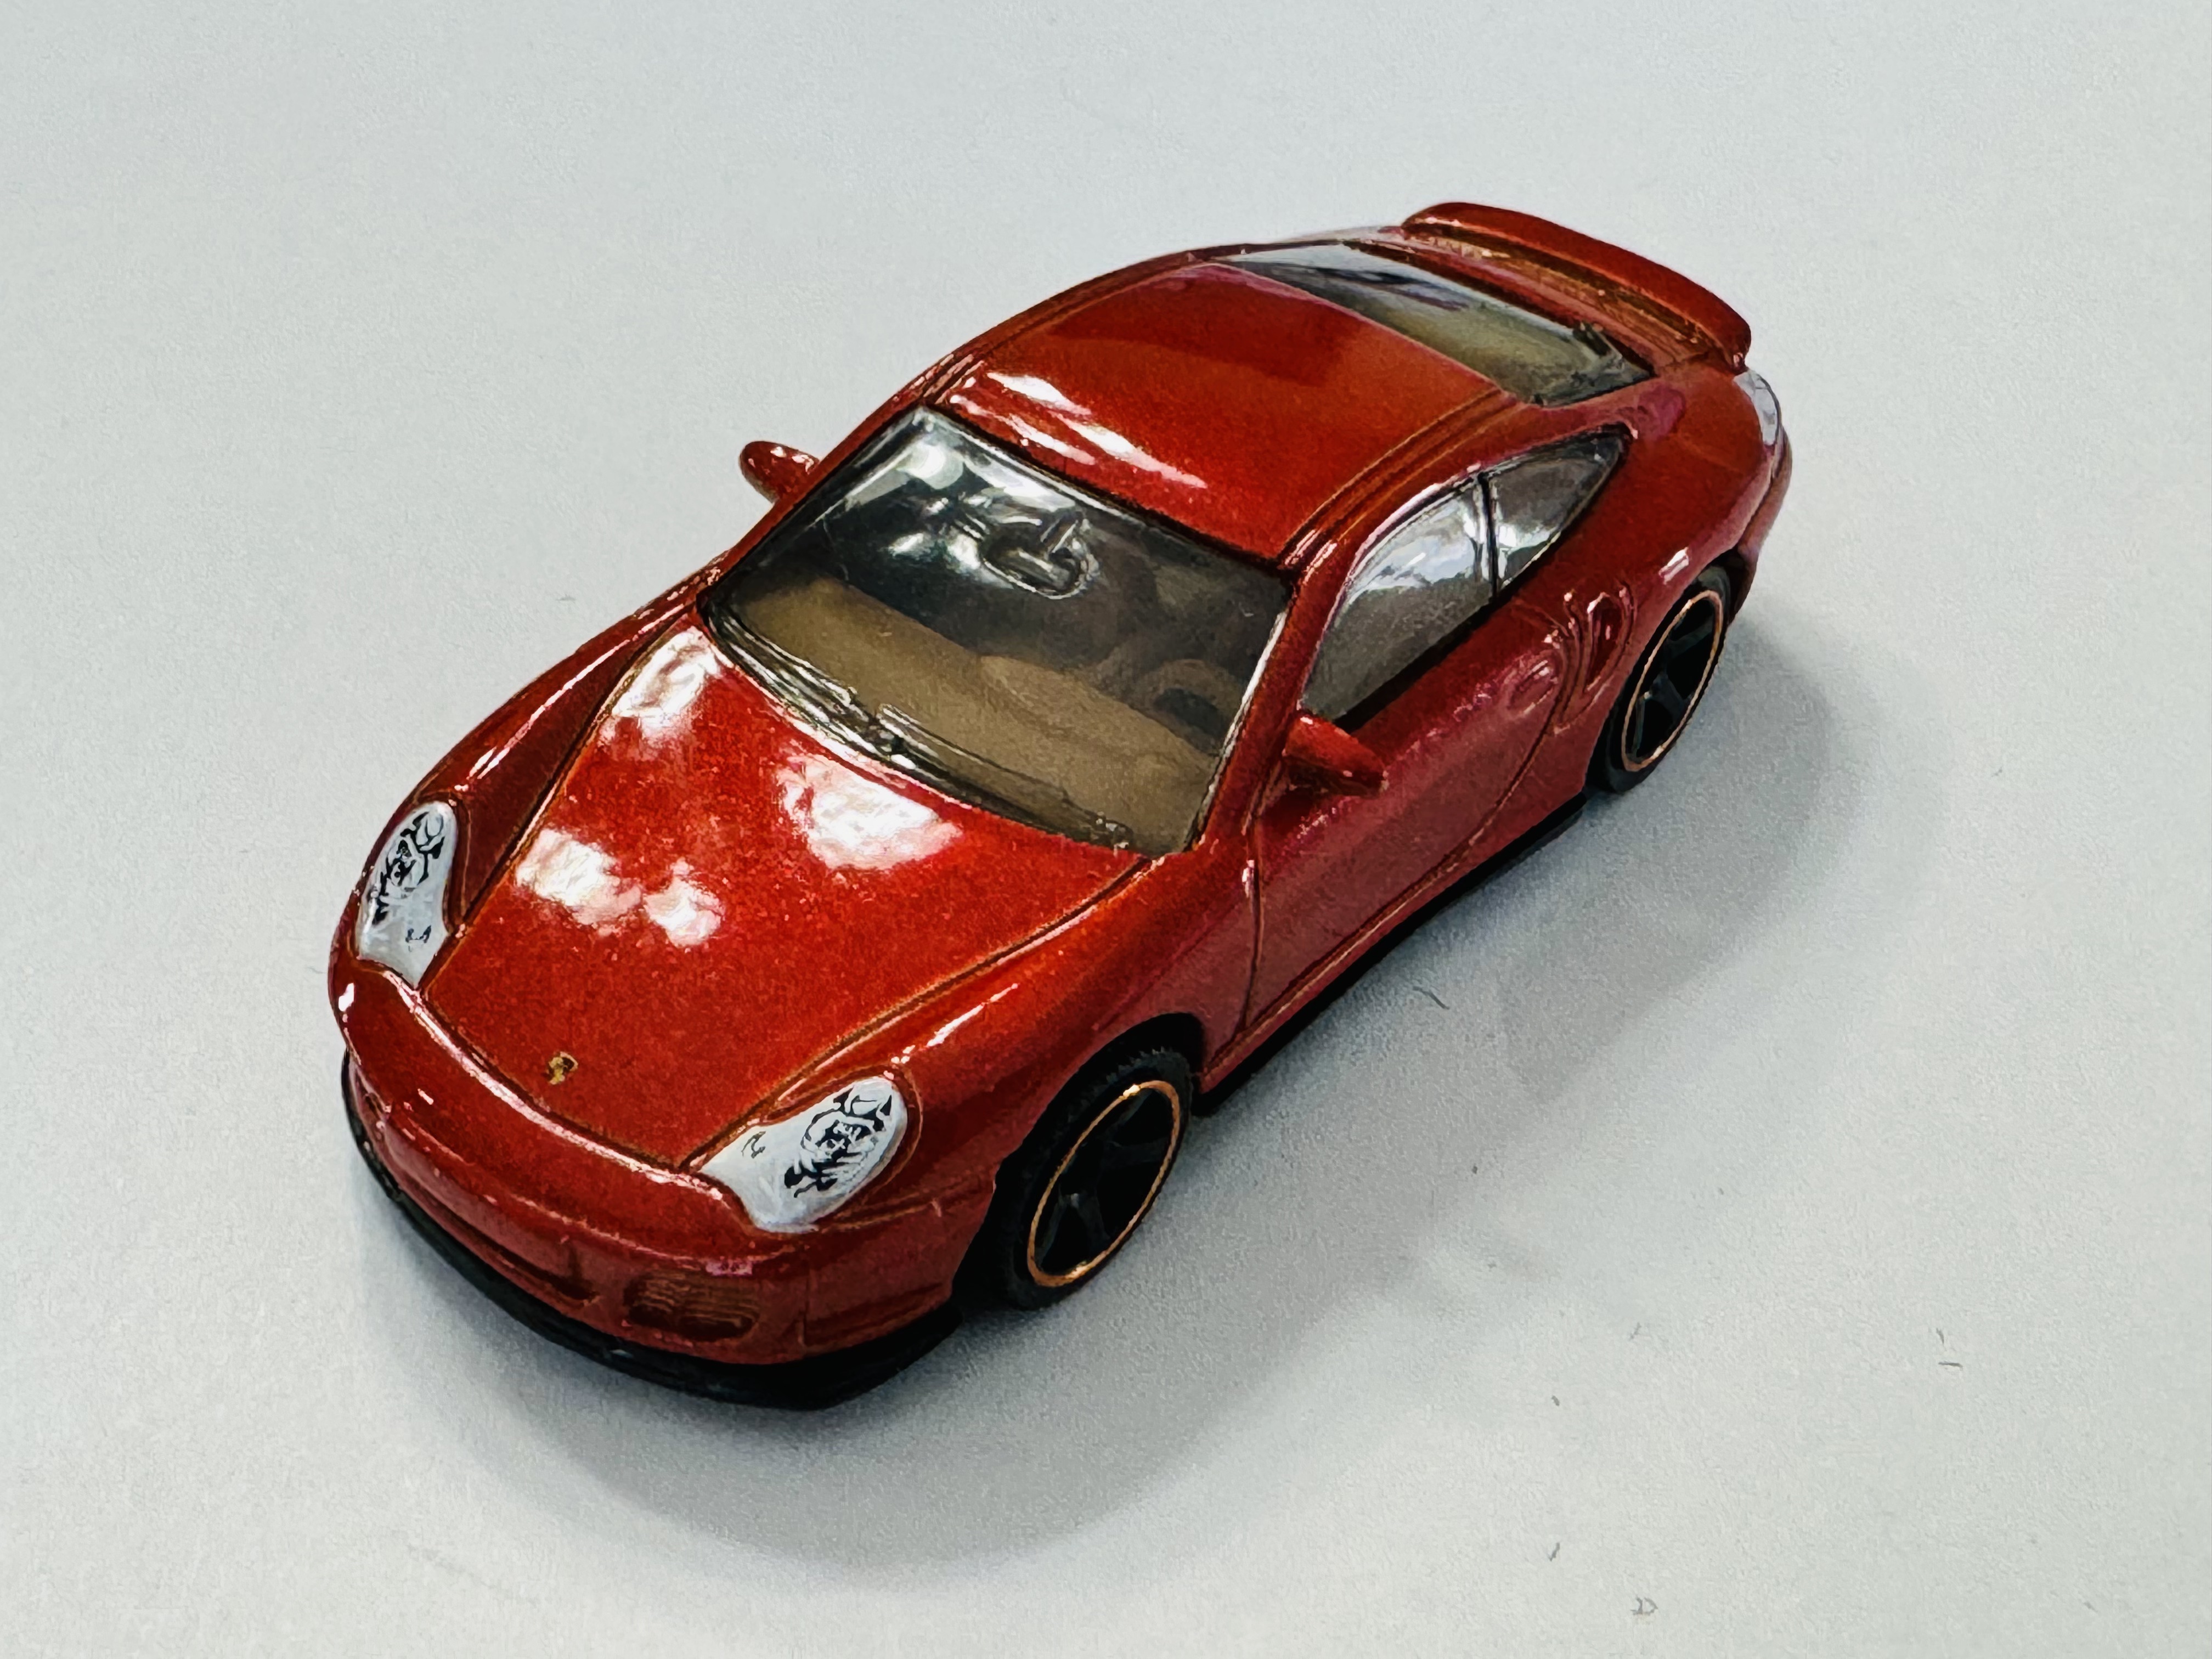 Matchbox Porsche 911 Turbo